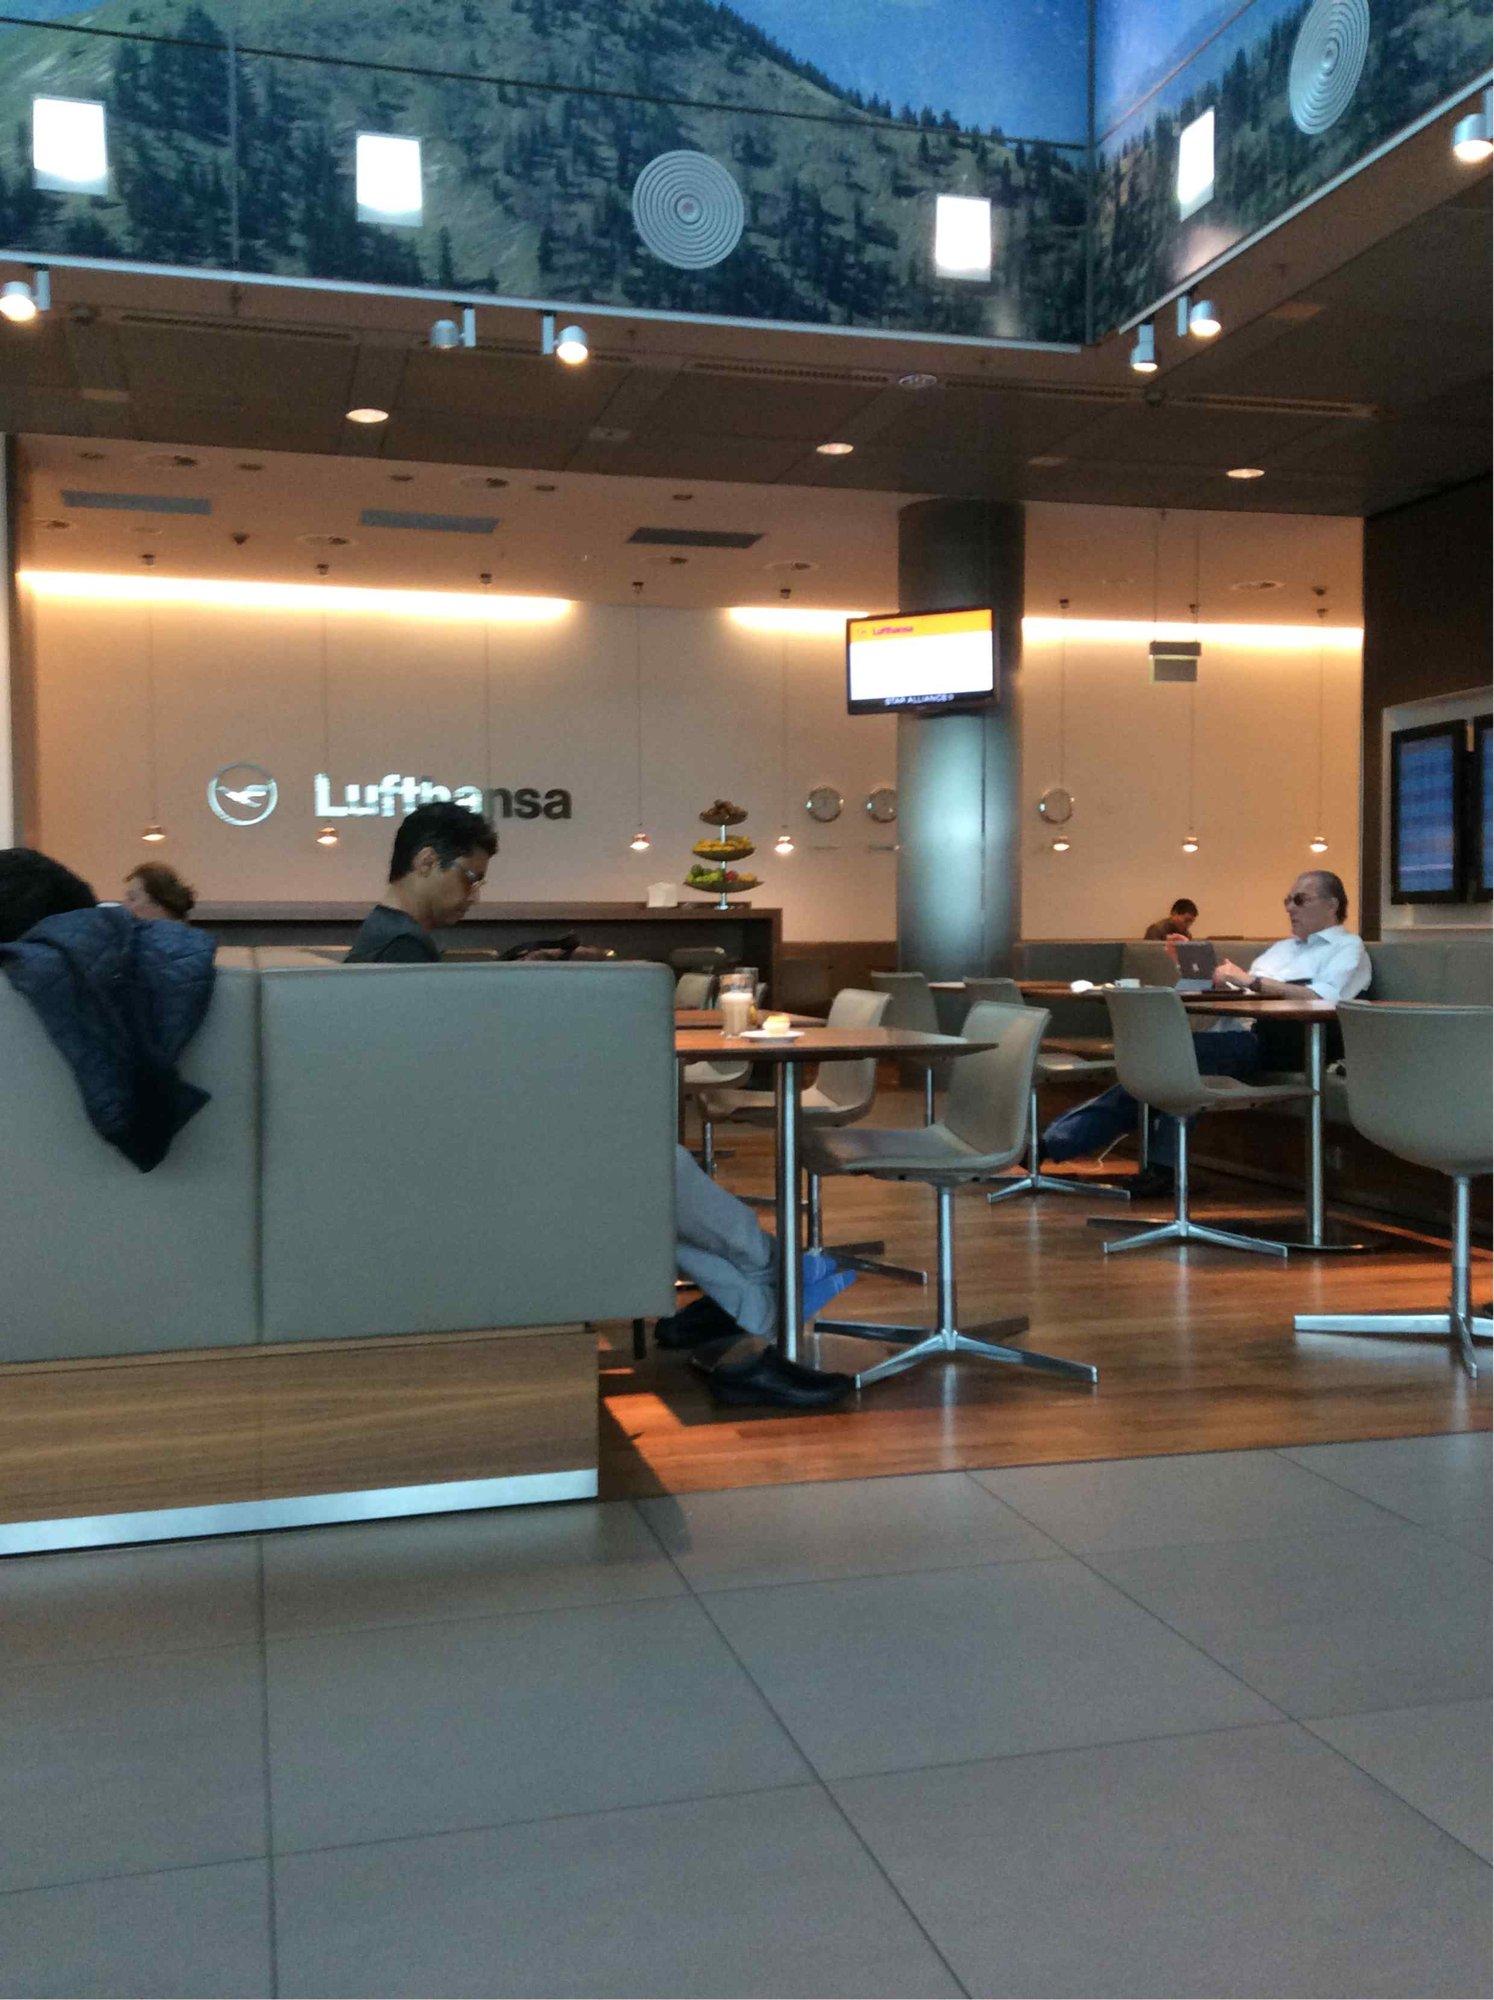 Lufthansa Senator Lounge (Non-Schengen) image 6 of 14